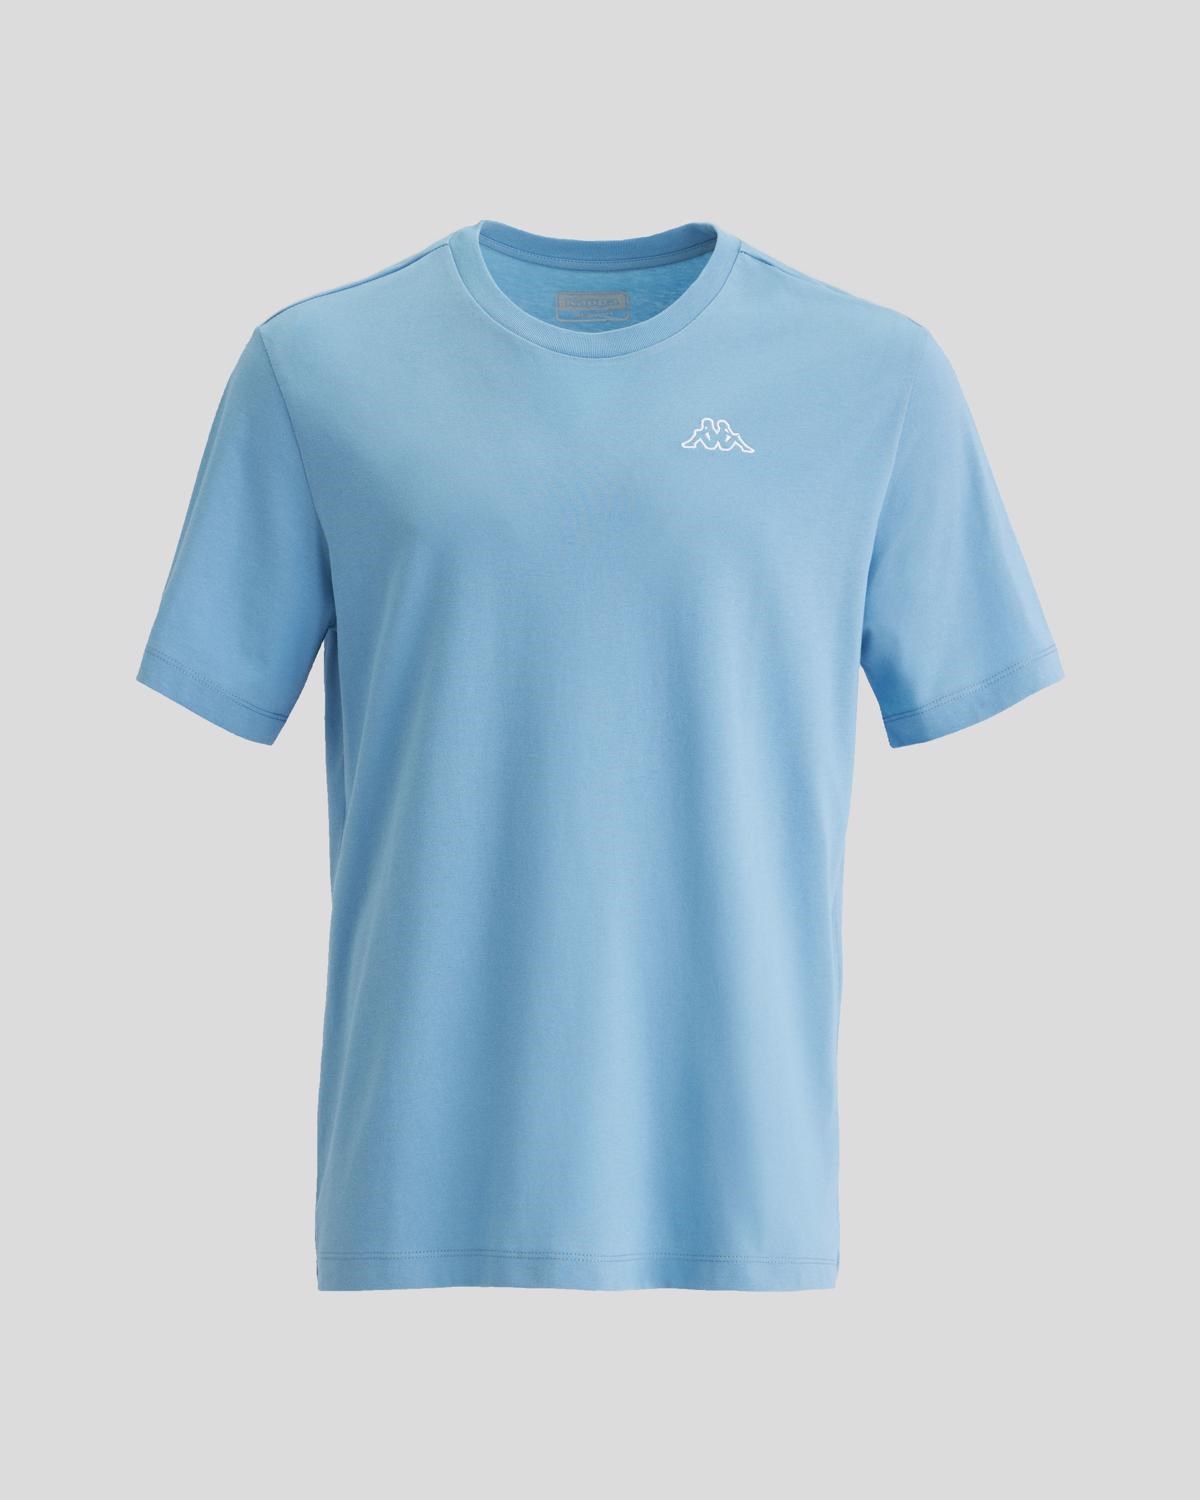 Kappa Erkek T-Shirt 331F7BW Blue Dusk